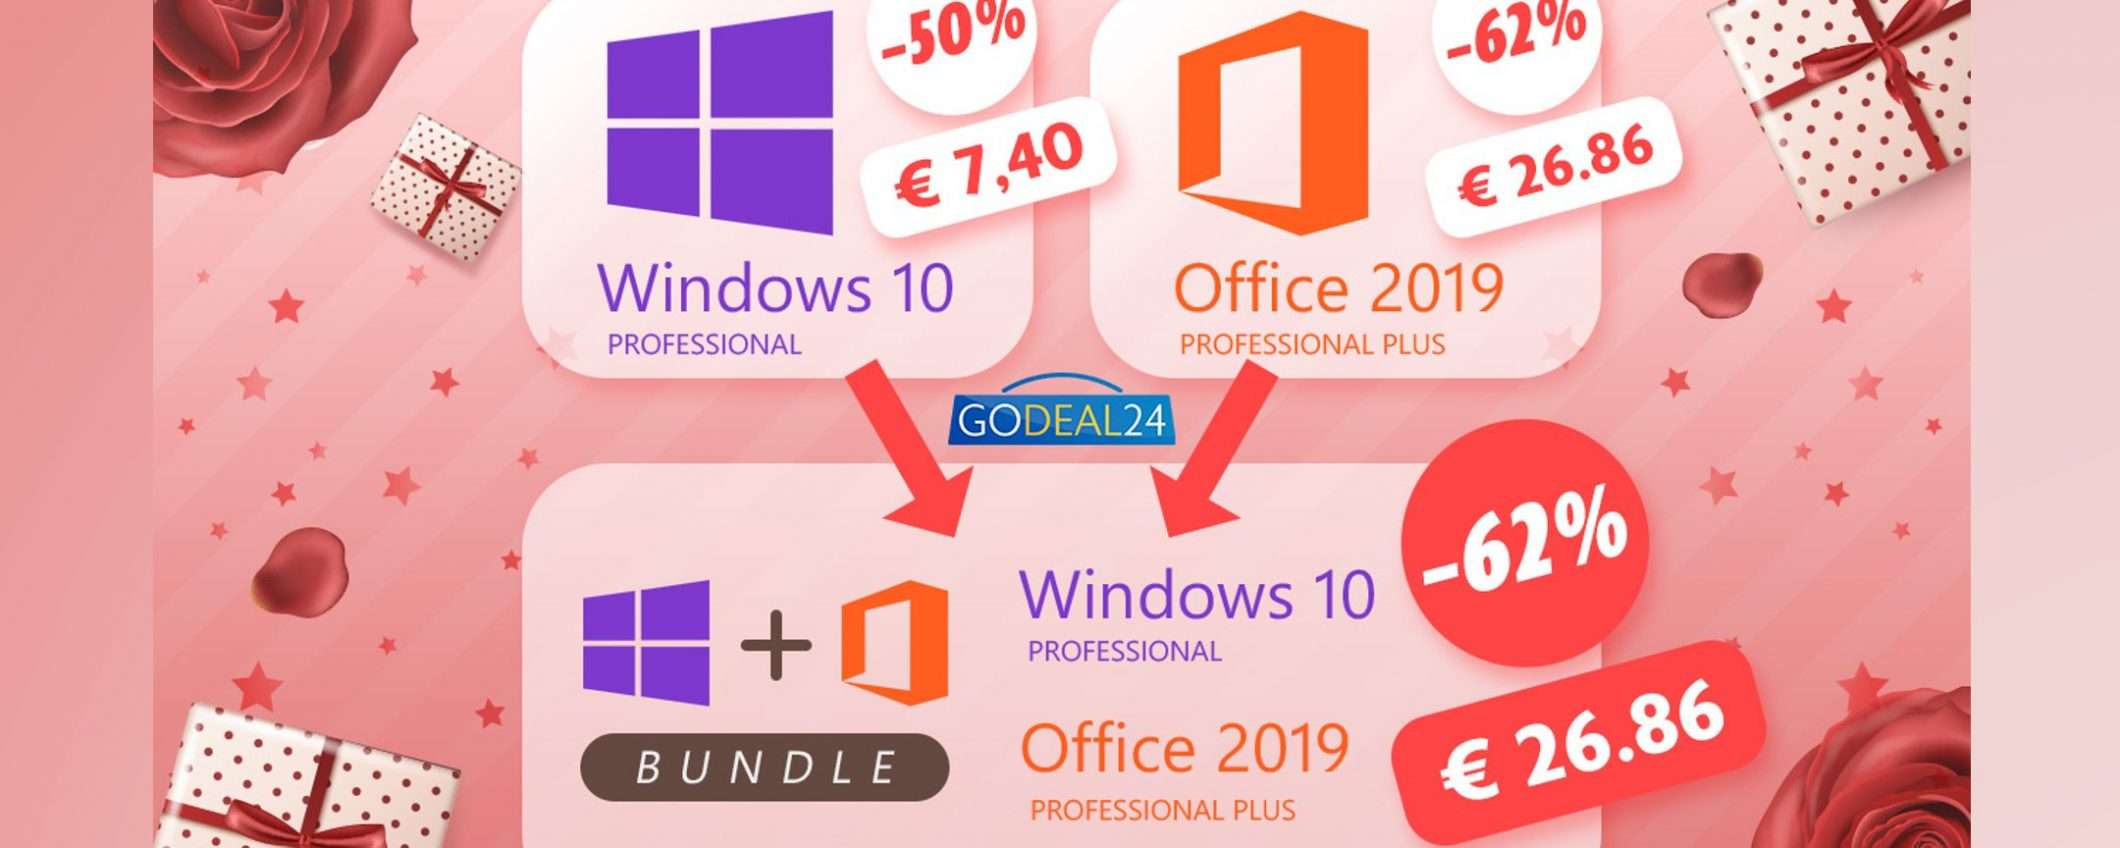 Festa della donna: 26€ per Windows 10 Pro + Office 2019 Pro